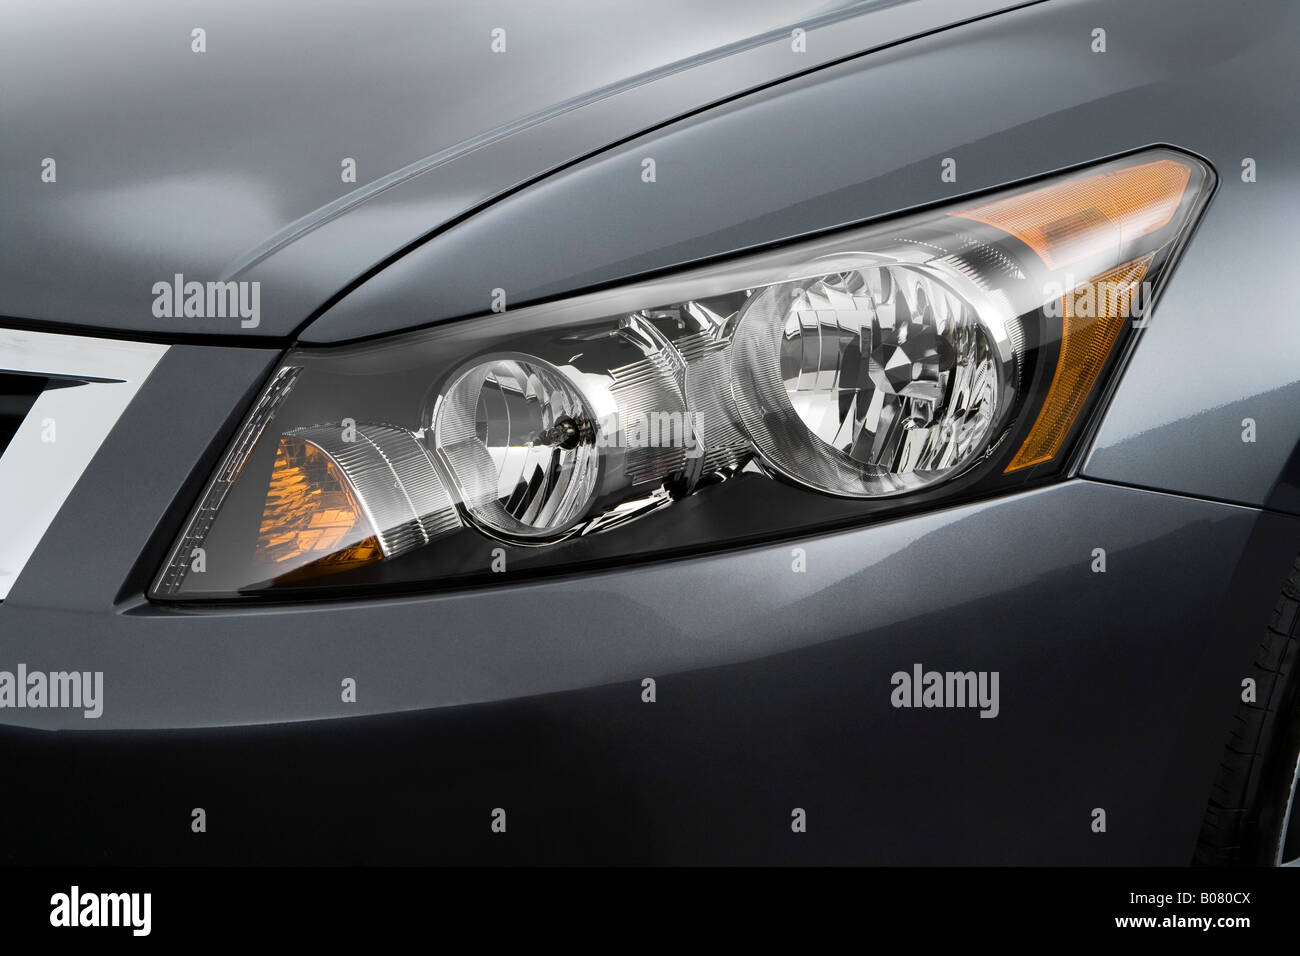 2008 Honda Accord EX-L V6 in grau - Scheinwerfer Stockfotografie - Alamy